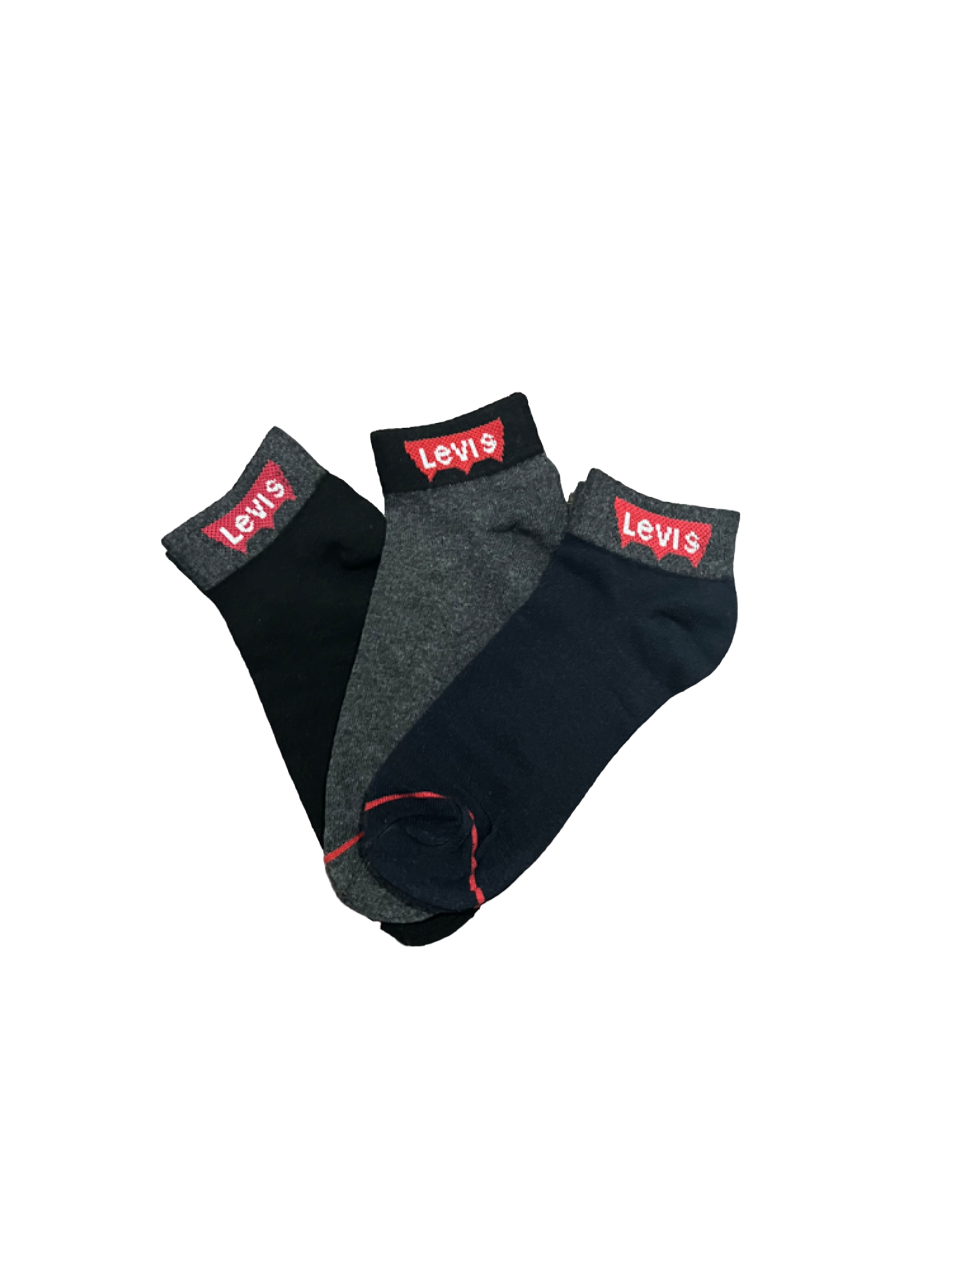 TMS Branded L-E-V-I-S Ankle Socks 15 (Pack Of 3)